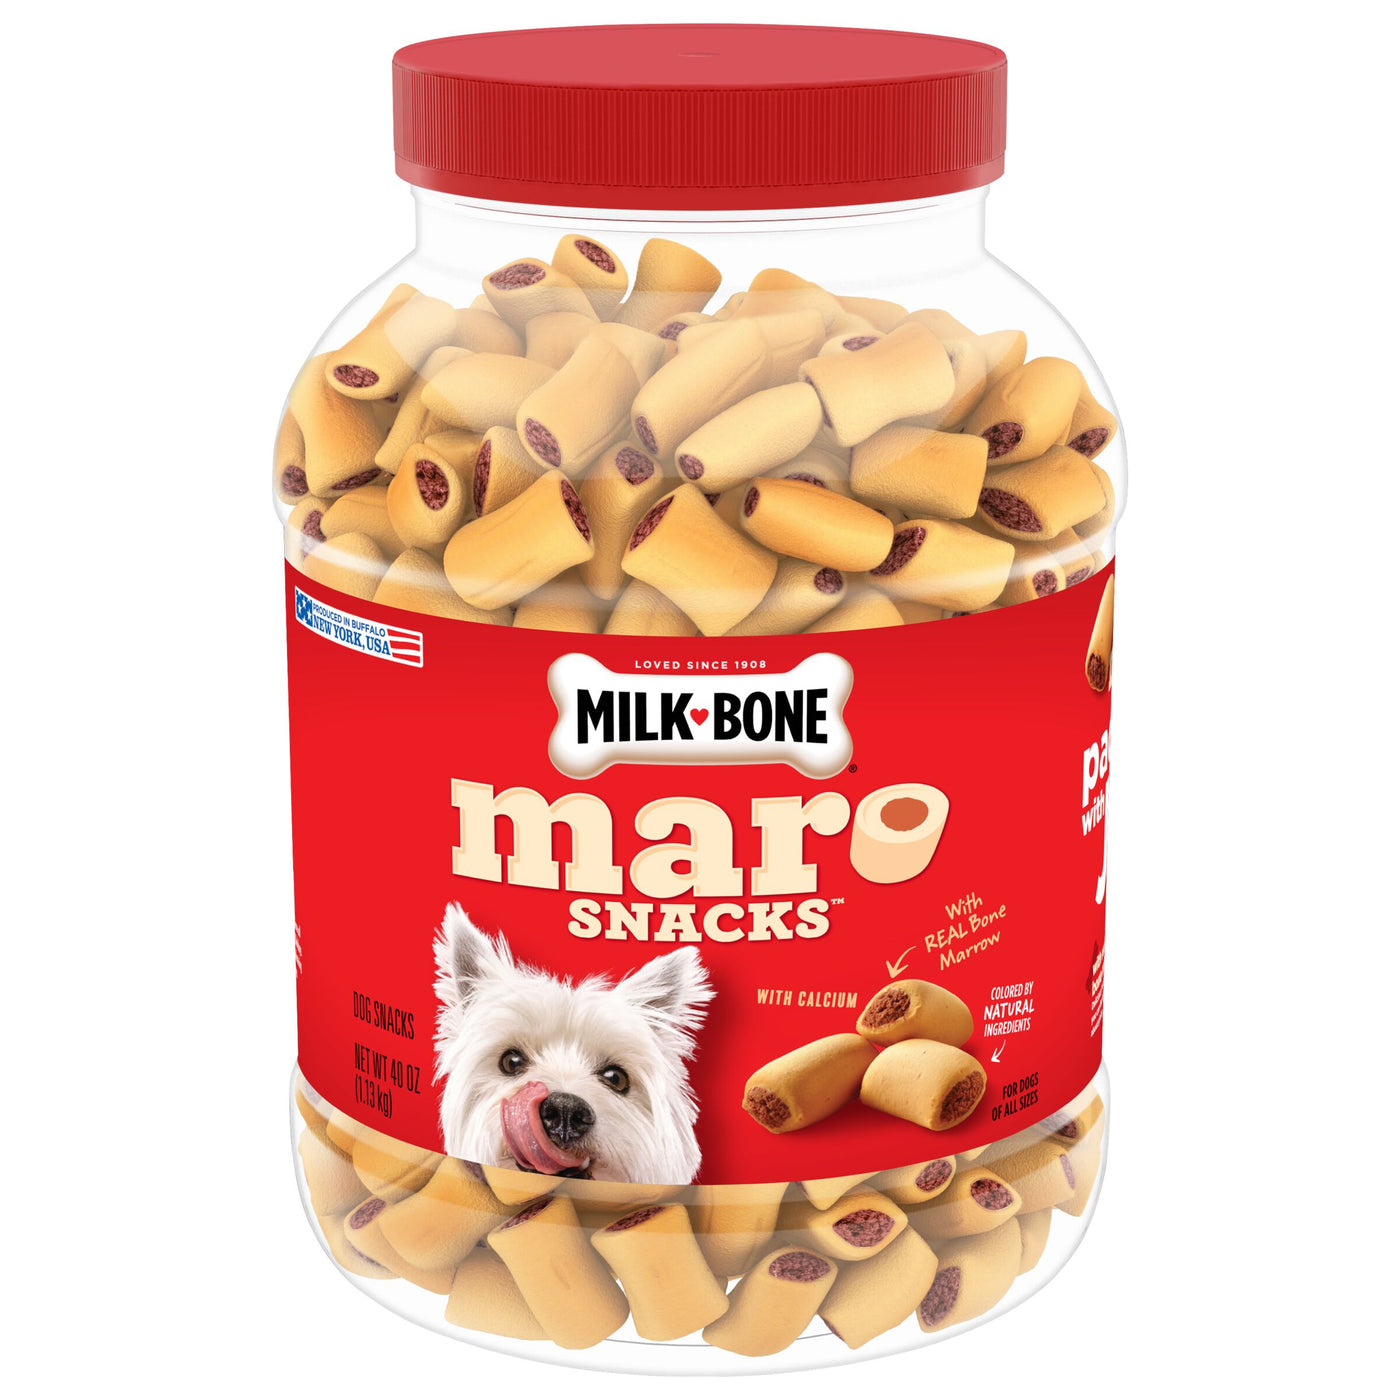 Milk-Bone MaroSnacks Small Dog Treats With Bone Marrow, 40 oz